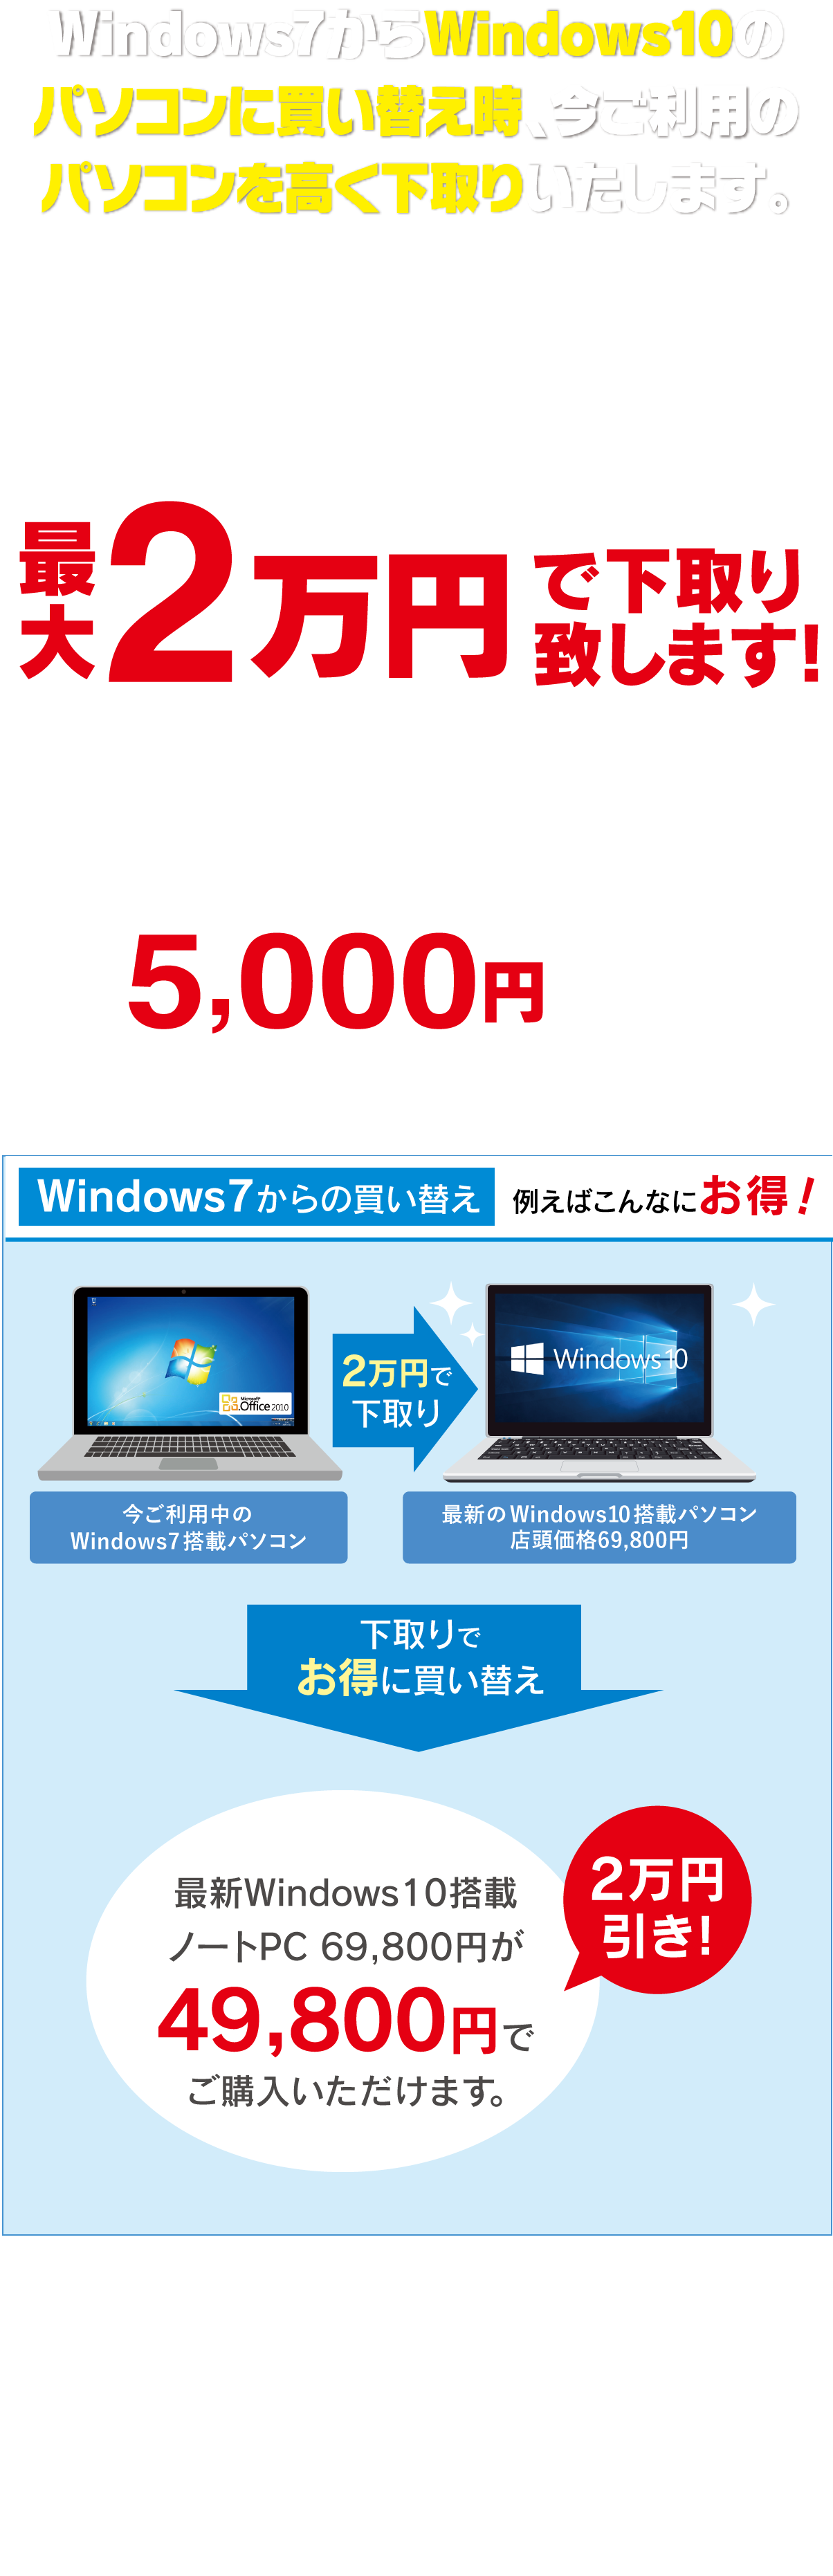 Windows7からWindows10のパソコンに買い替え時、今ご利用のパソコンを高く下取りいたします。